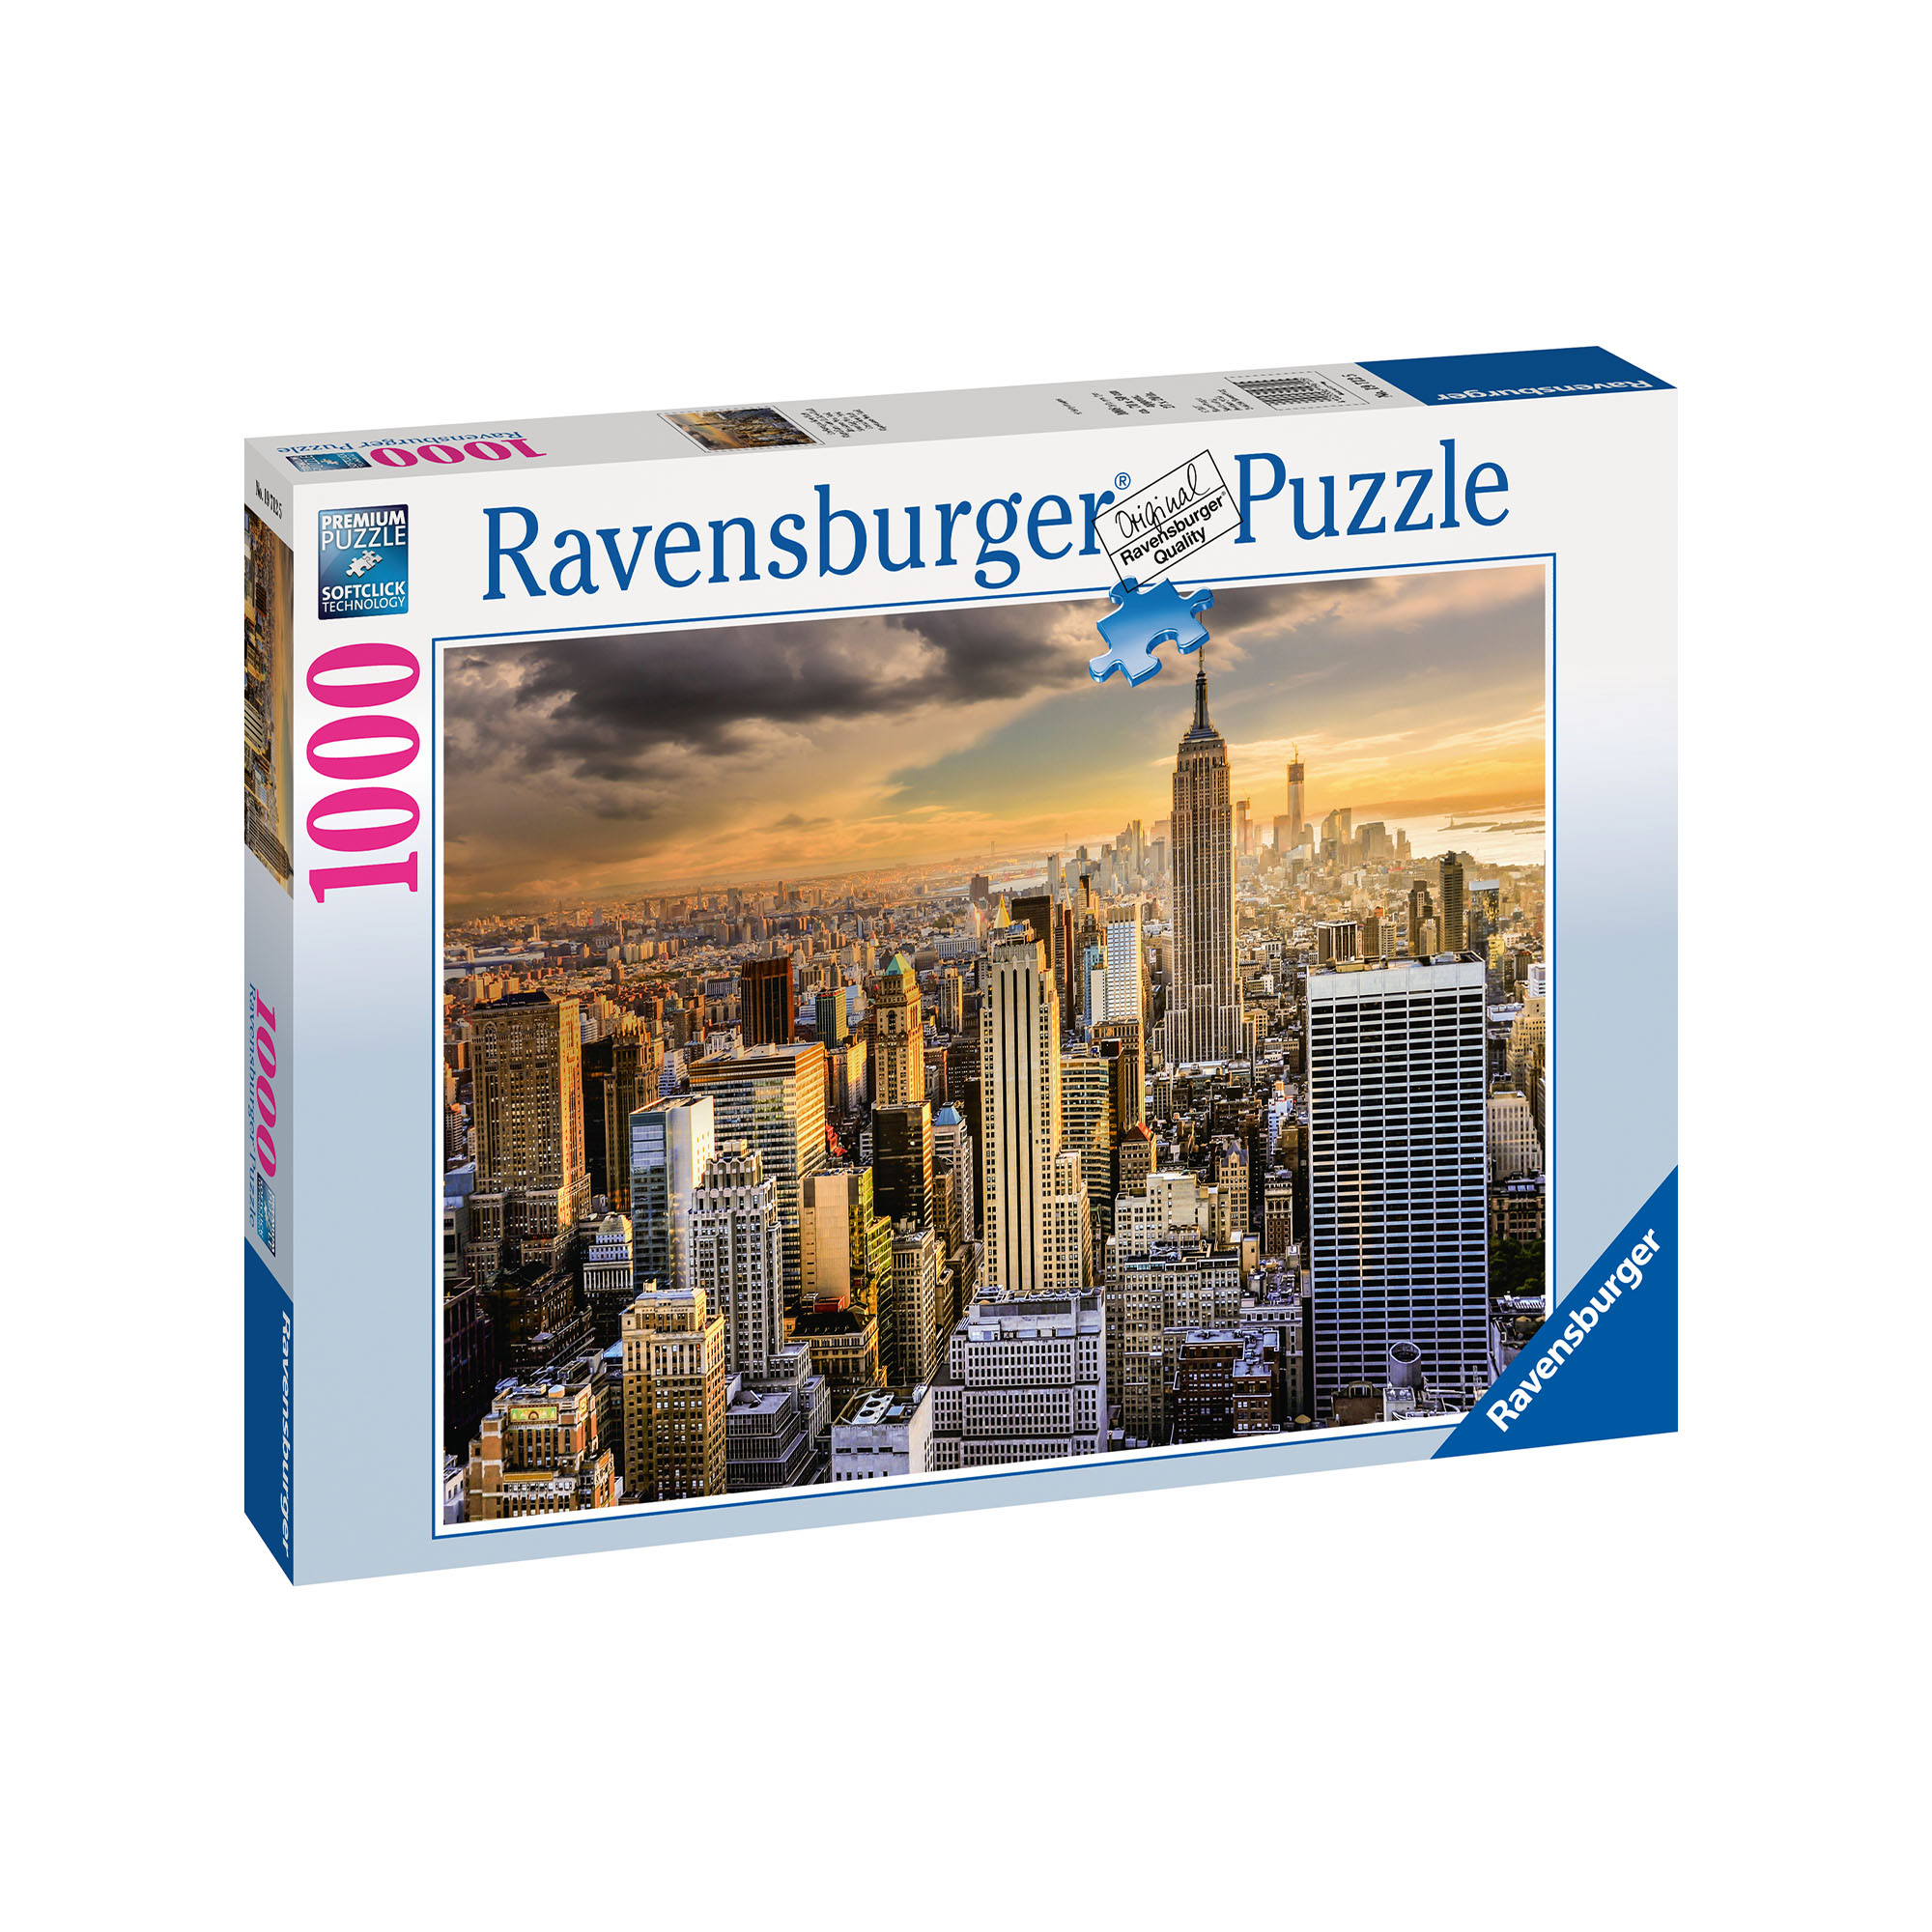 Ravensburger Puzzle 1000 Pezzi 19712 - Maestosa New York, , large